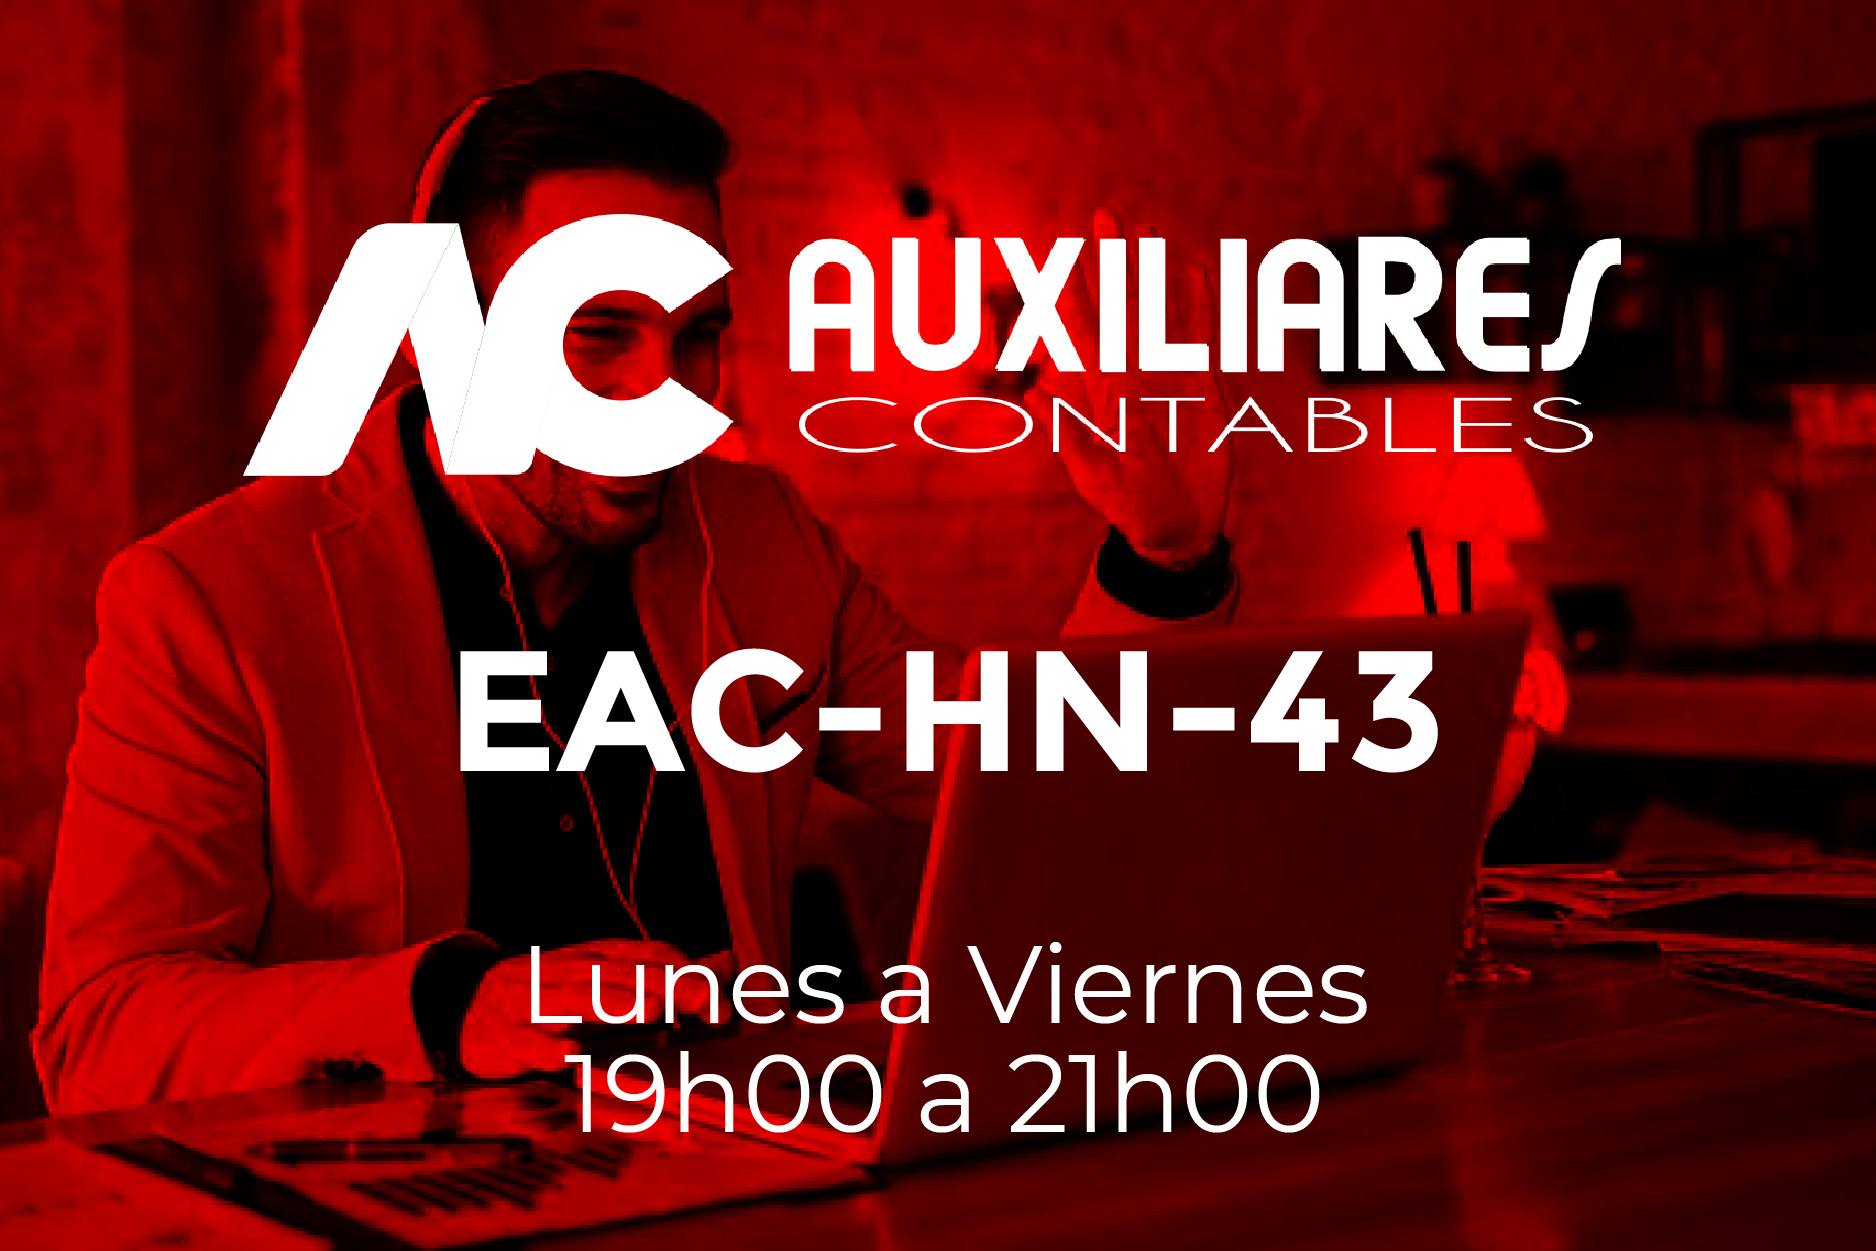 43 - AUXILIARES CONTABLES - LUNES A VIERNES - 19:00 A 21:00